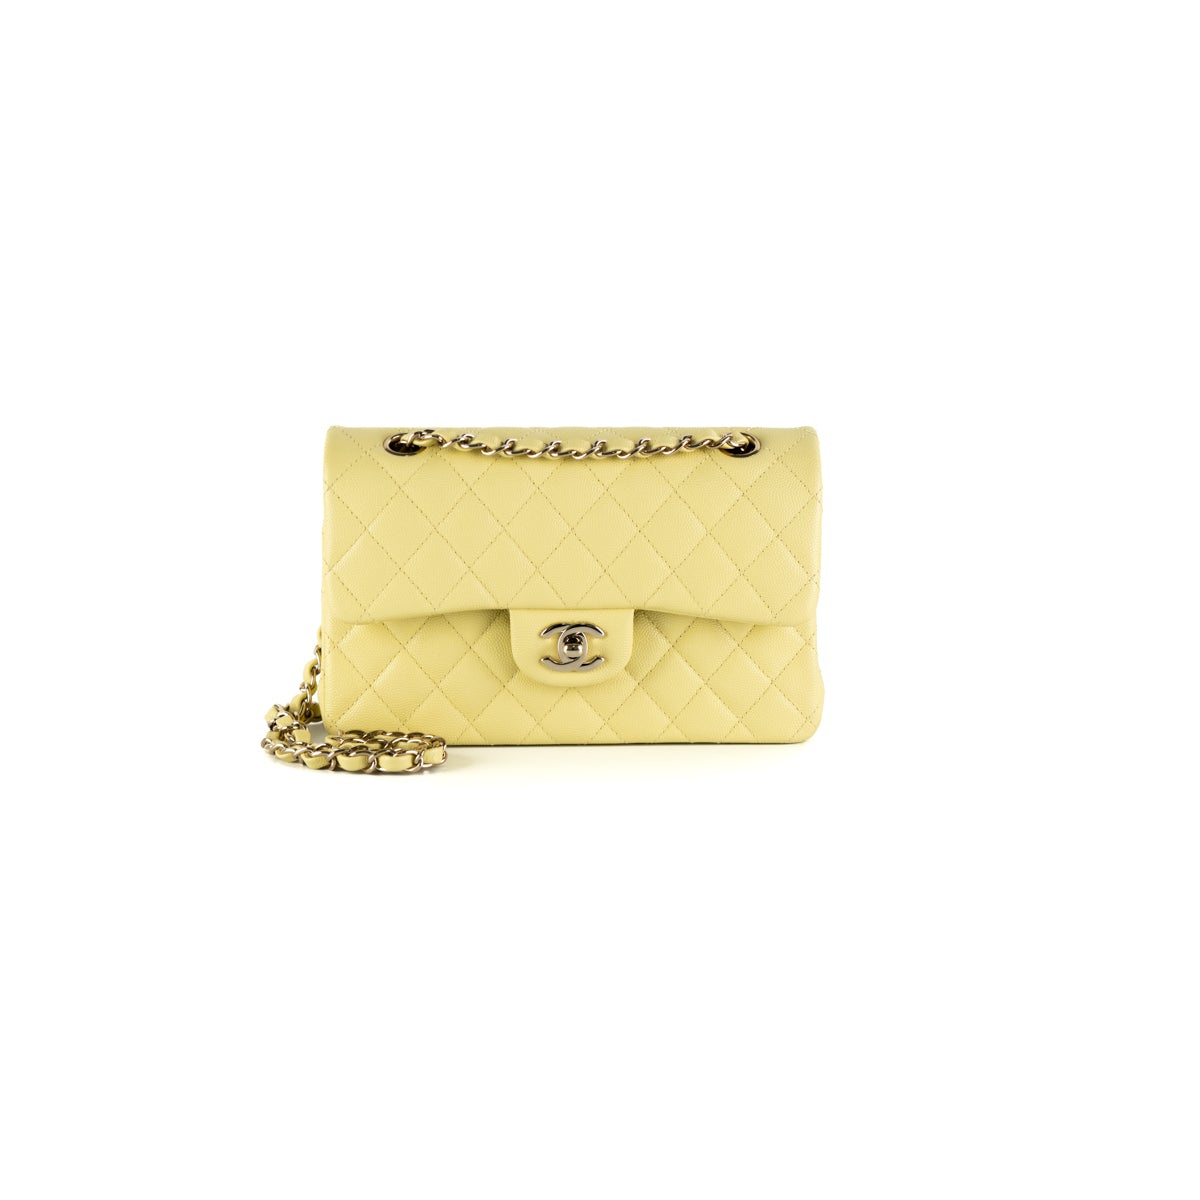 Mua Túi Đeo Chéo Nữ Chanel Flap Bag With Top Handle In Yellow Màu Vàng   Chanel  Mua tại Vua Hàng Hiệu h093016